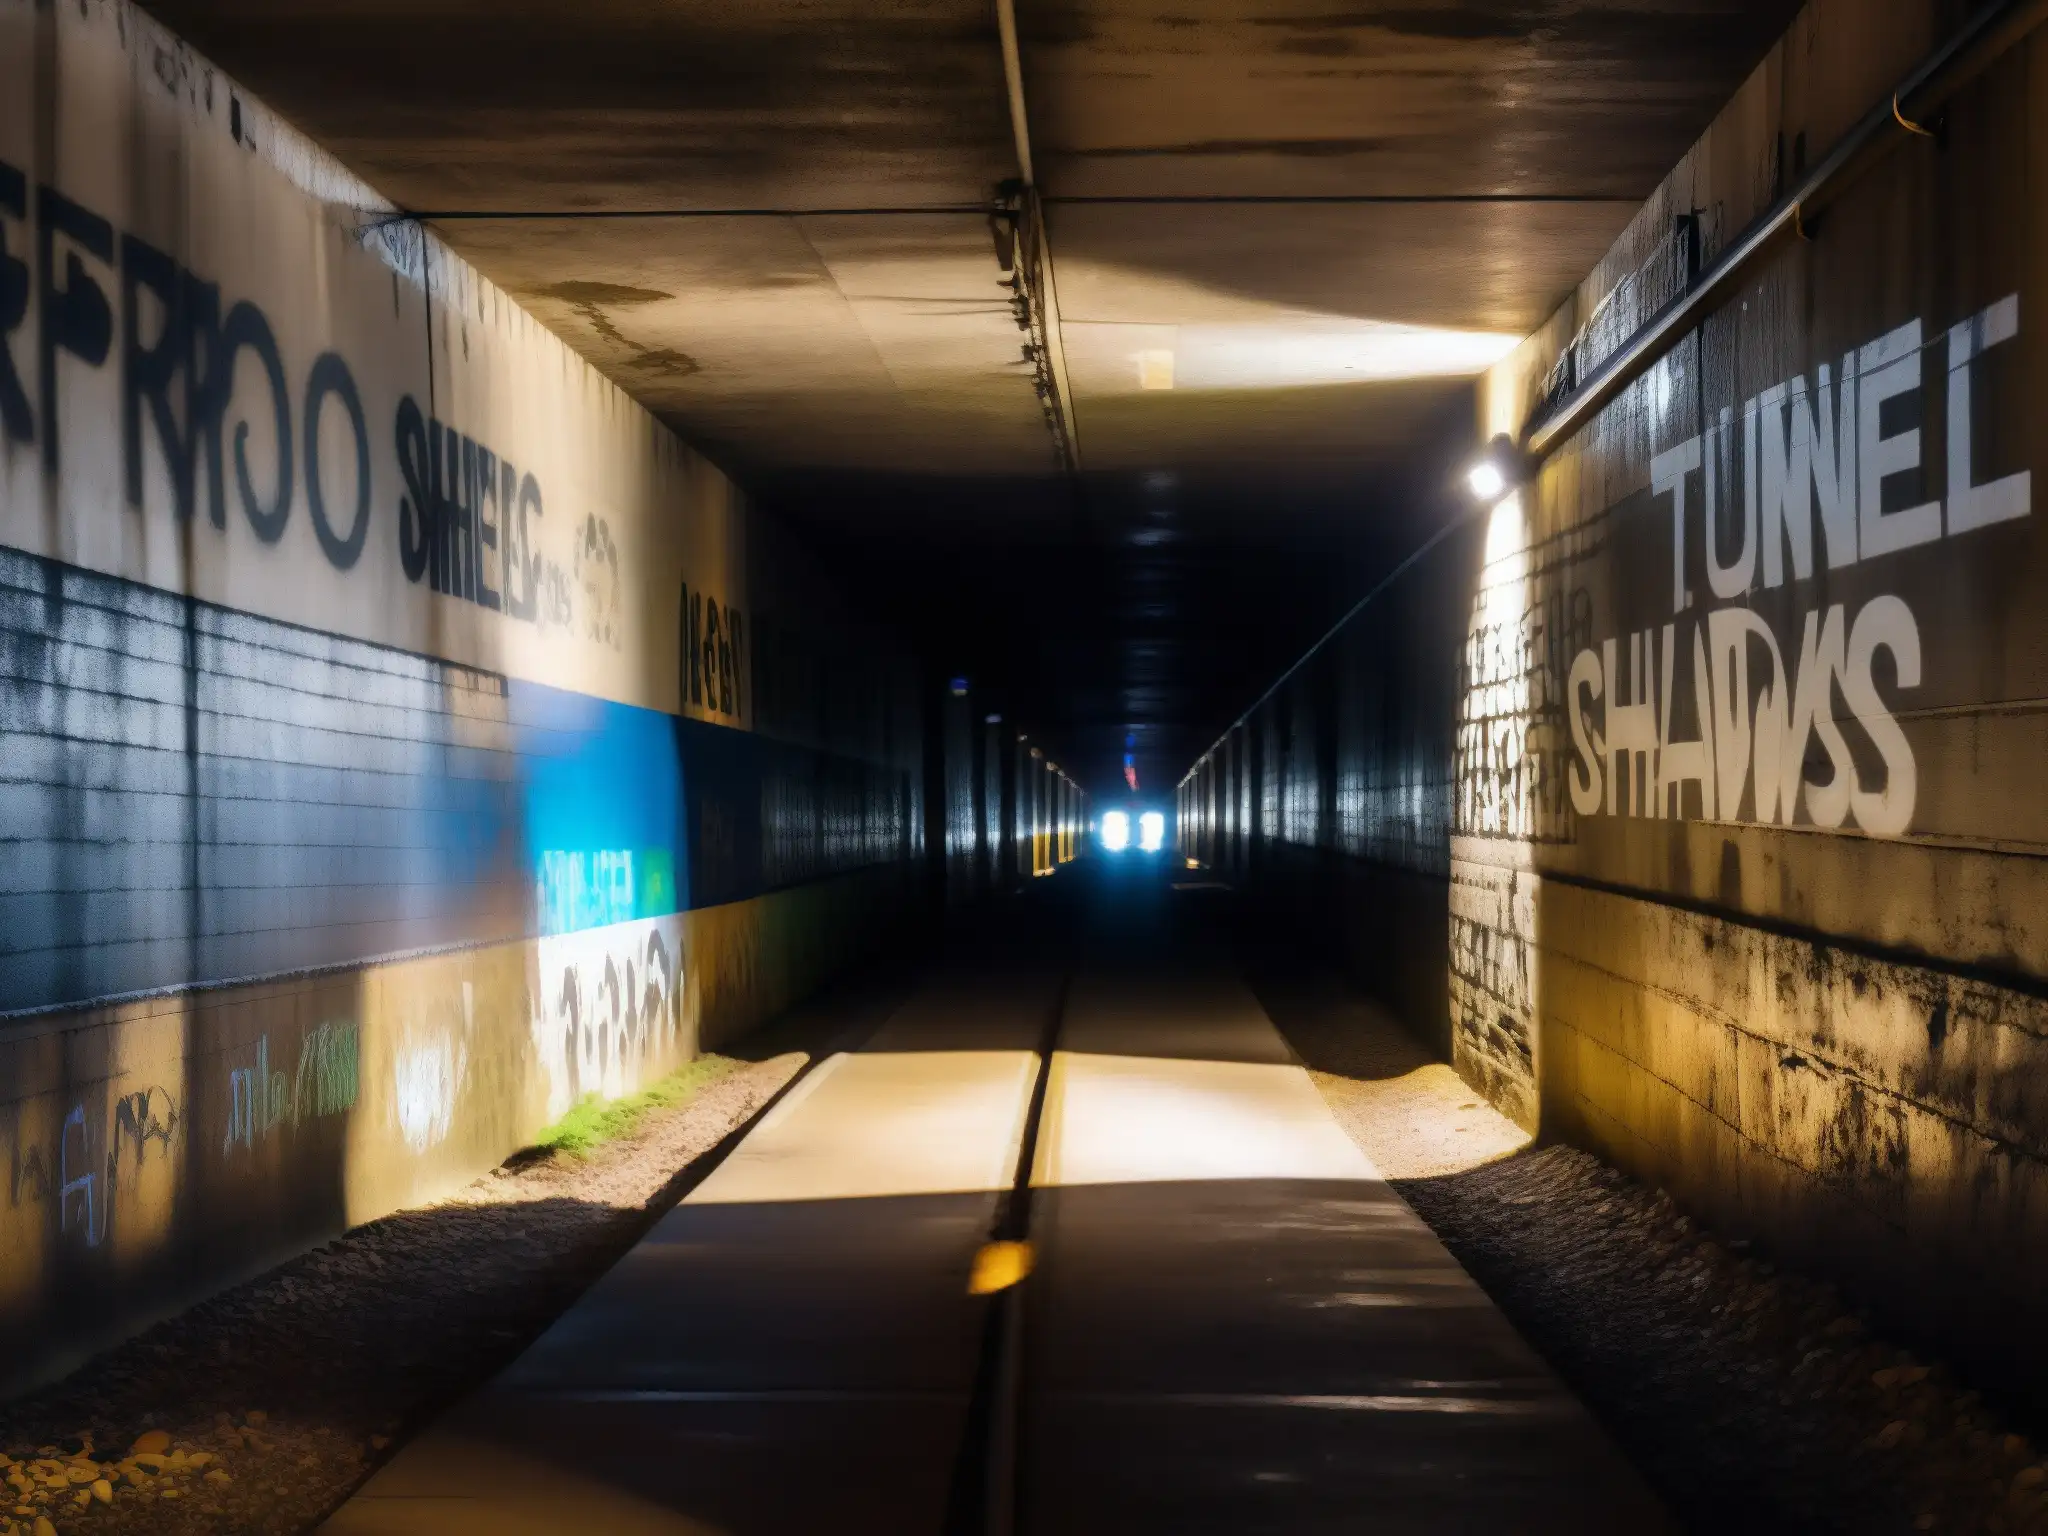 Entrada tenebrosa de túnel con sombras inquietantes y figura misteriosa al fondo, creando atmósfera de leyenda urbana túnel Screaming Tunnel